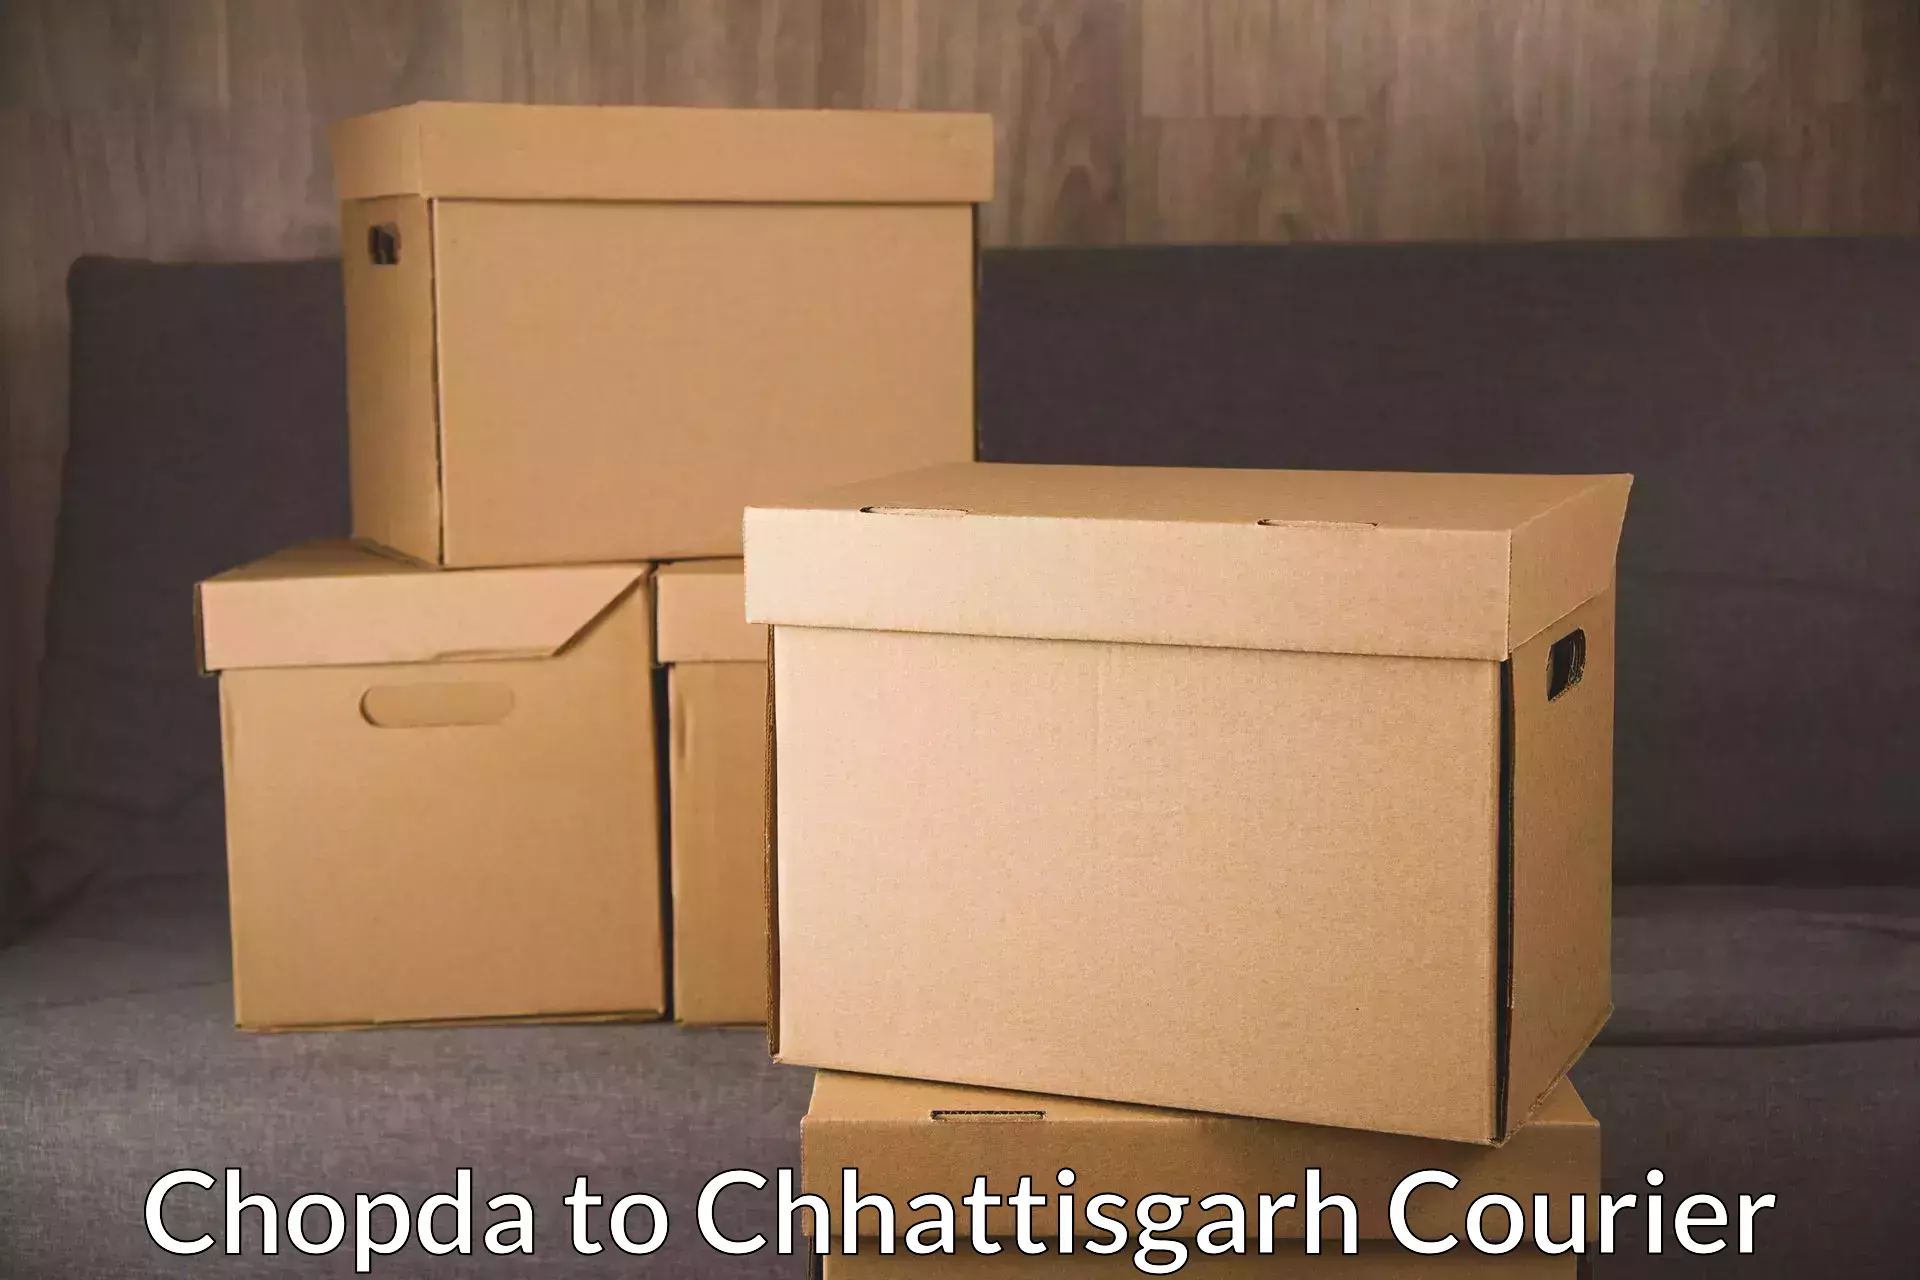 User-friendly delivery service Chopda to Chhattisgarh